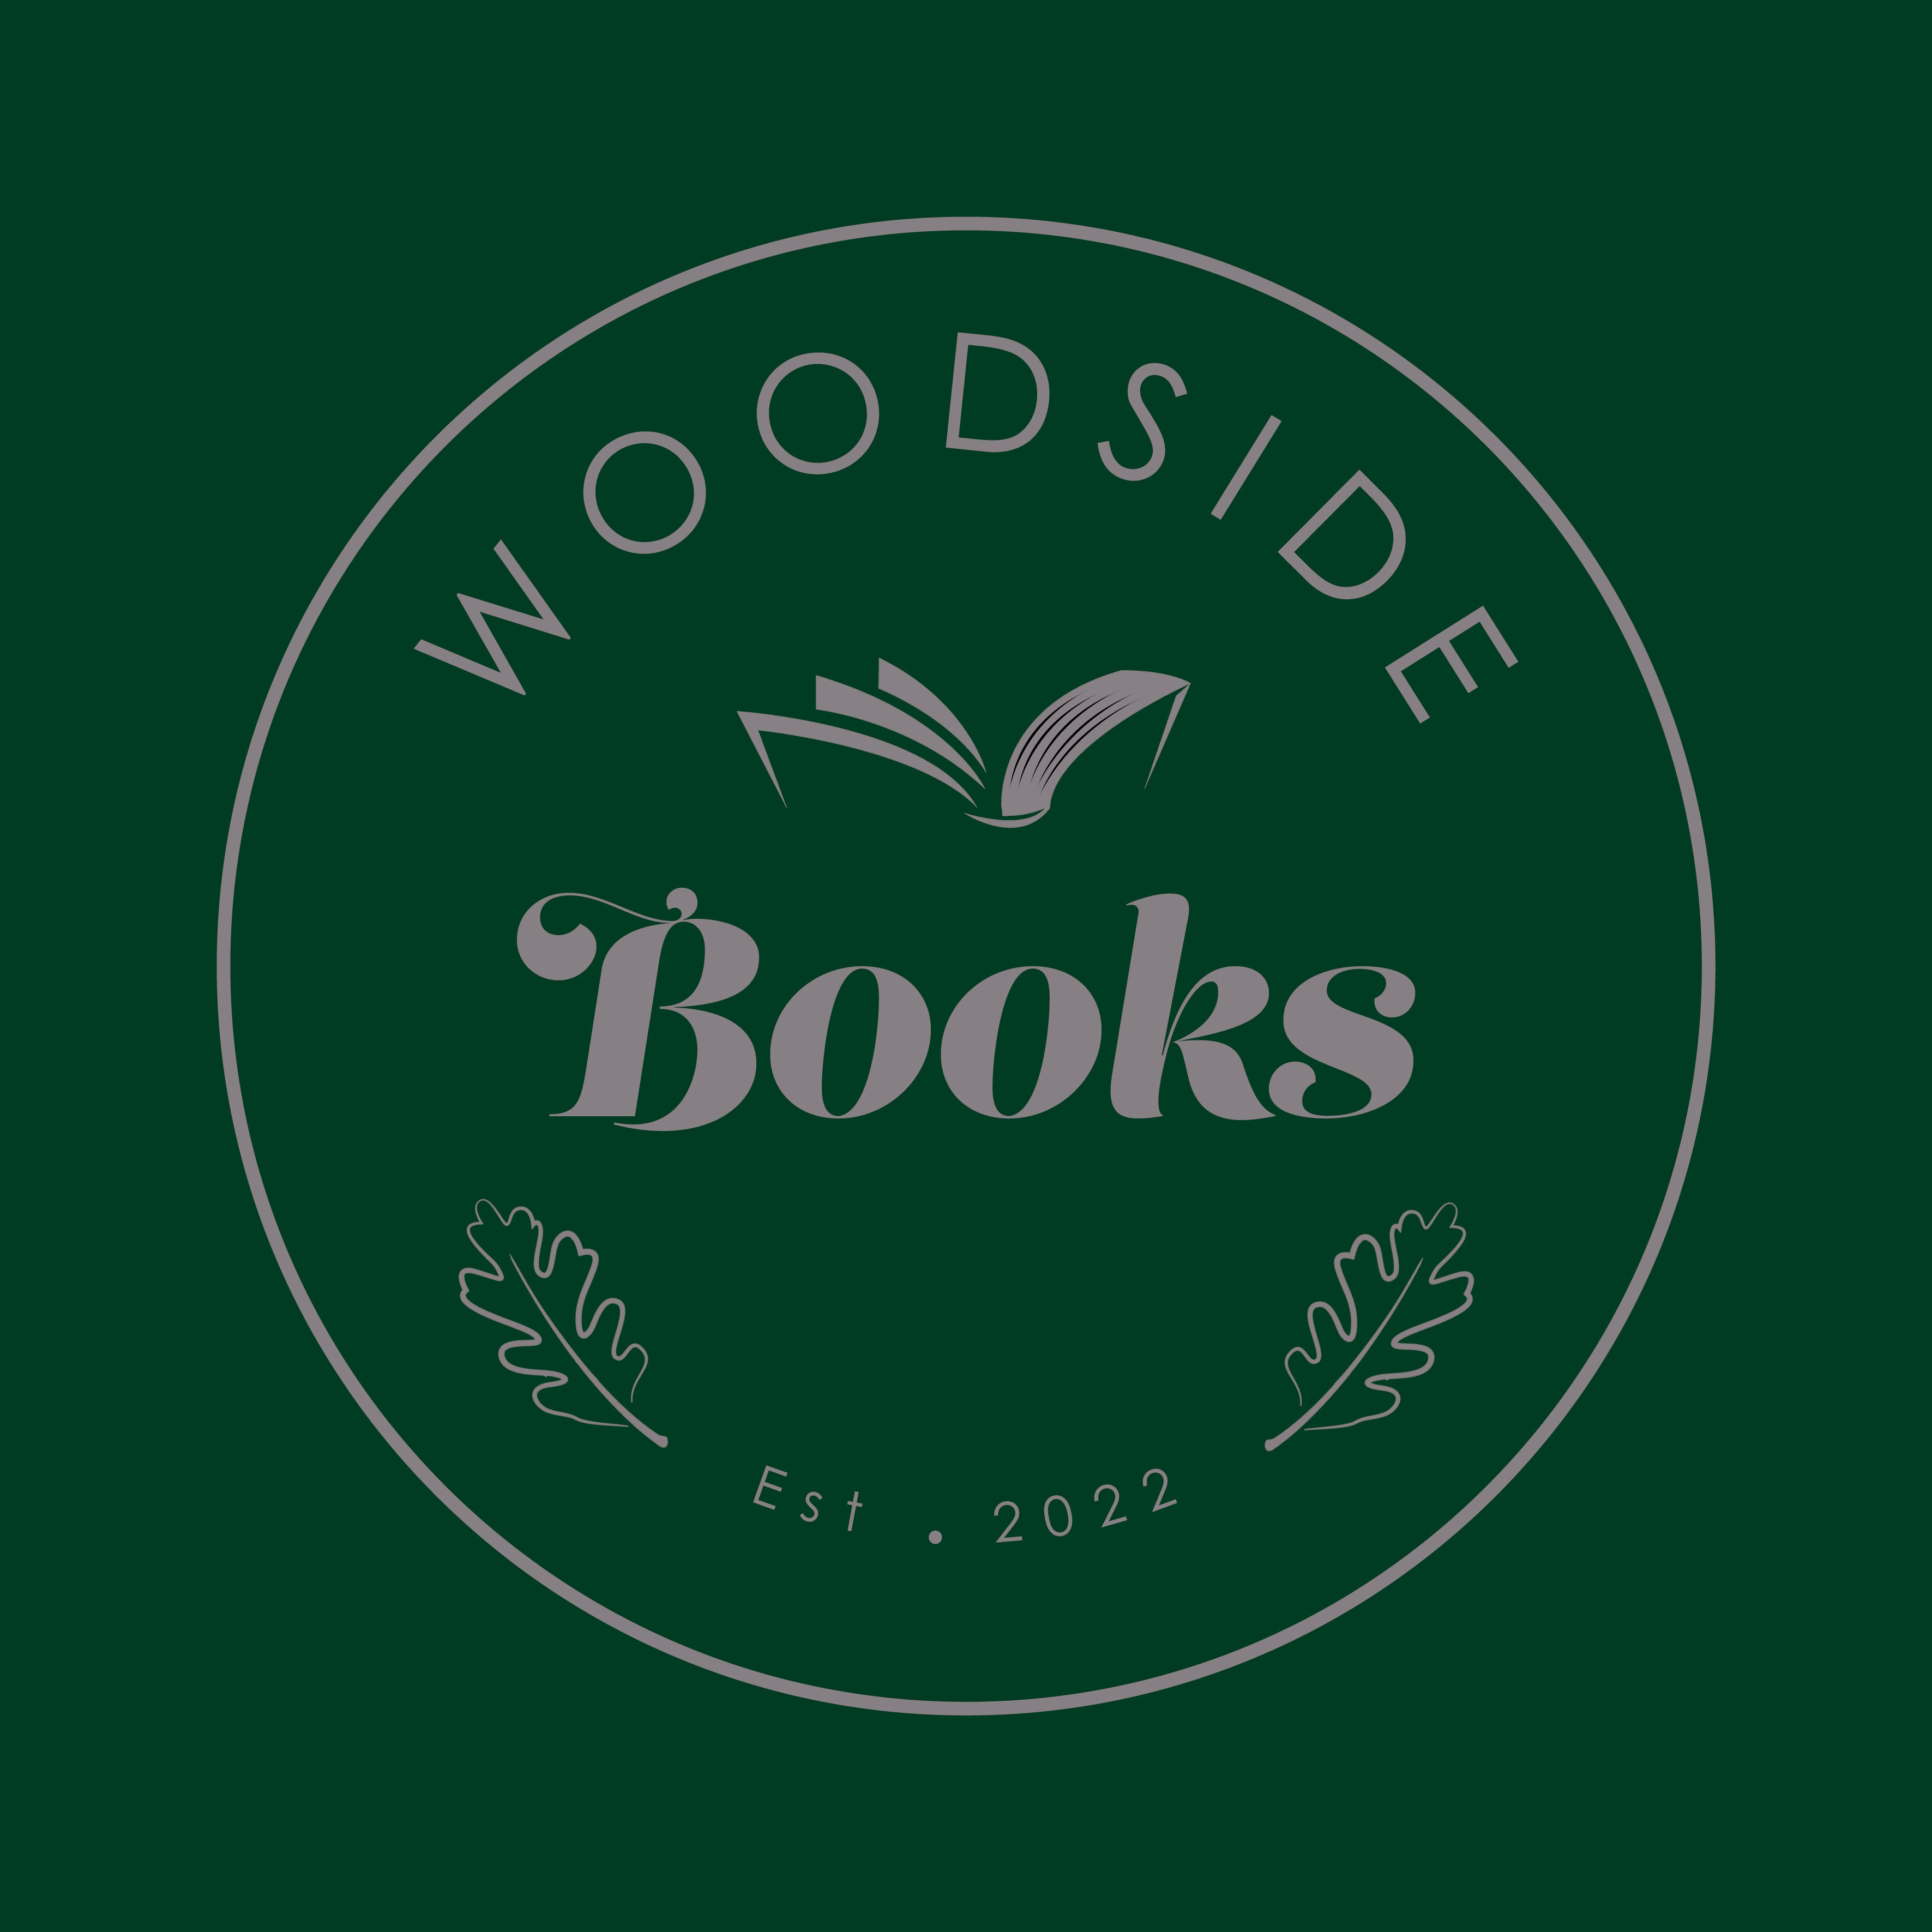 Woodside Books